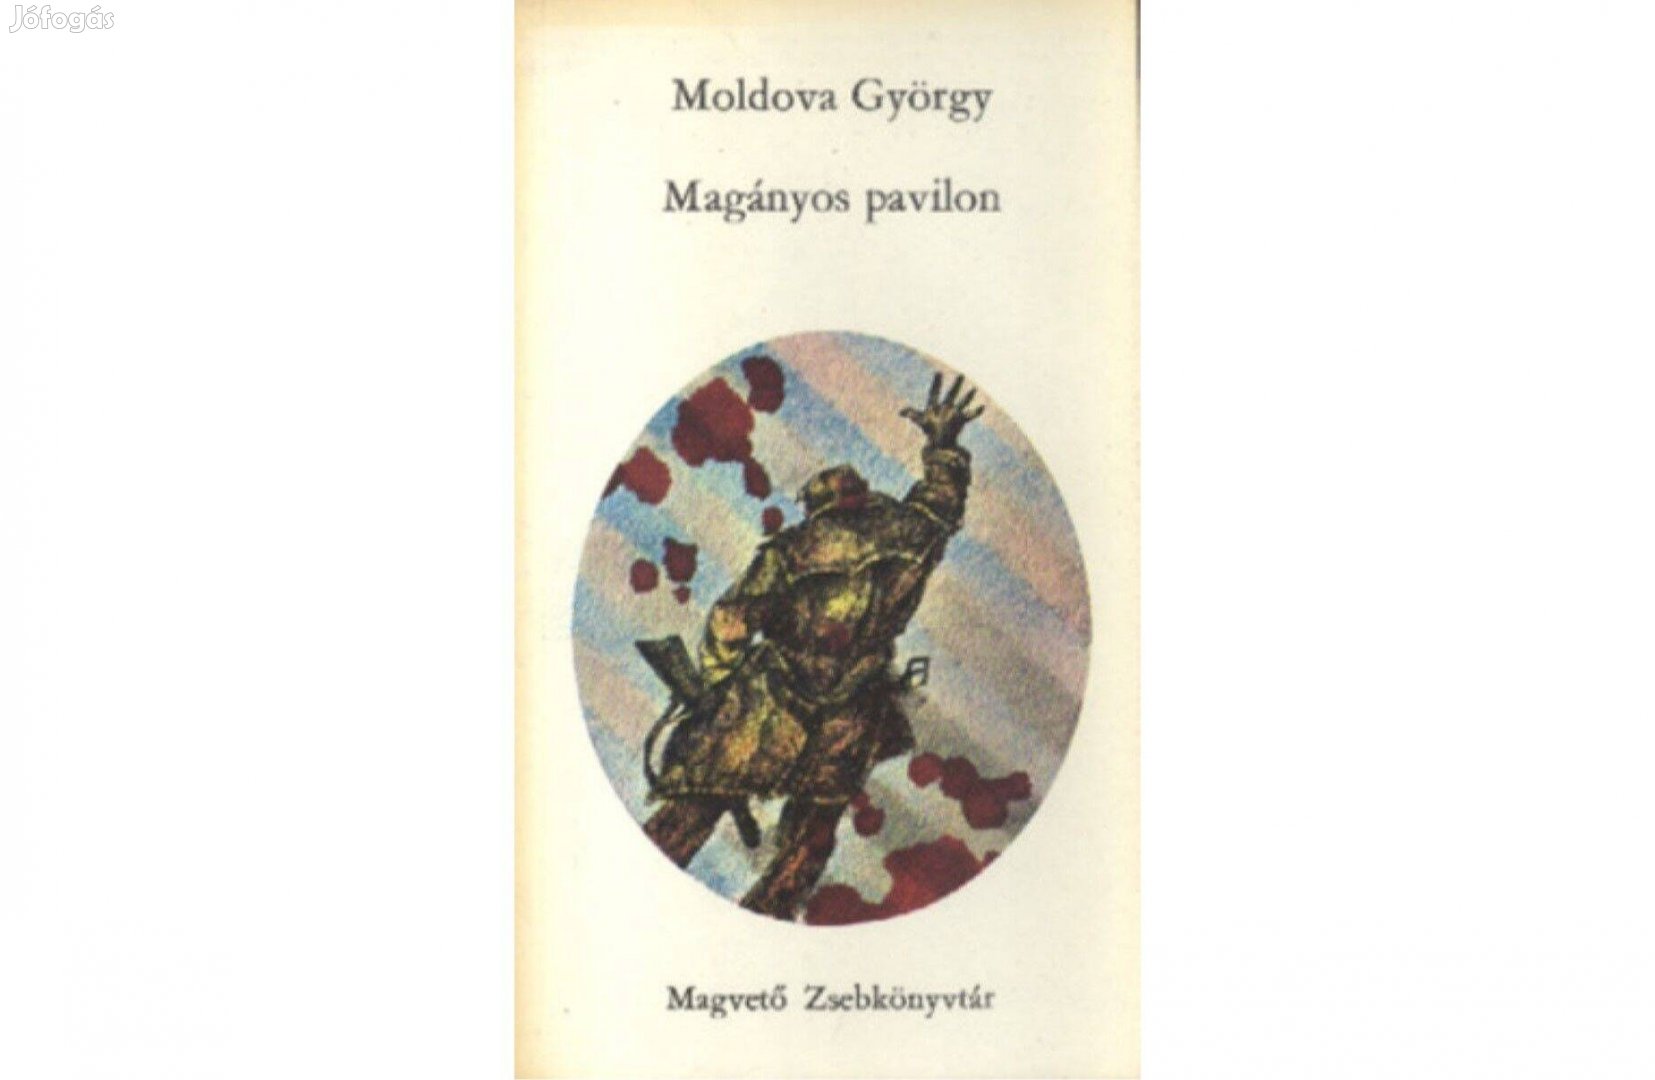 Moldova György: Magányos pavilon (1966 Magvető Kiadó)